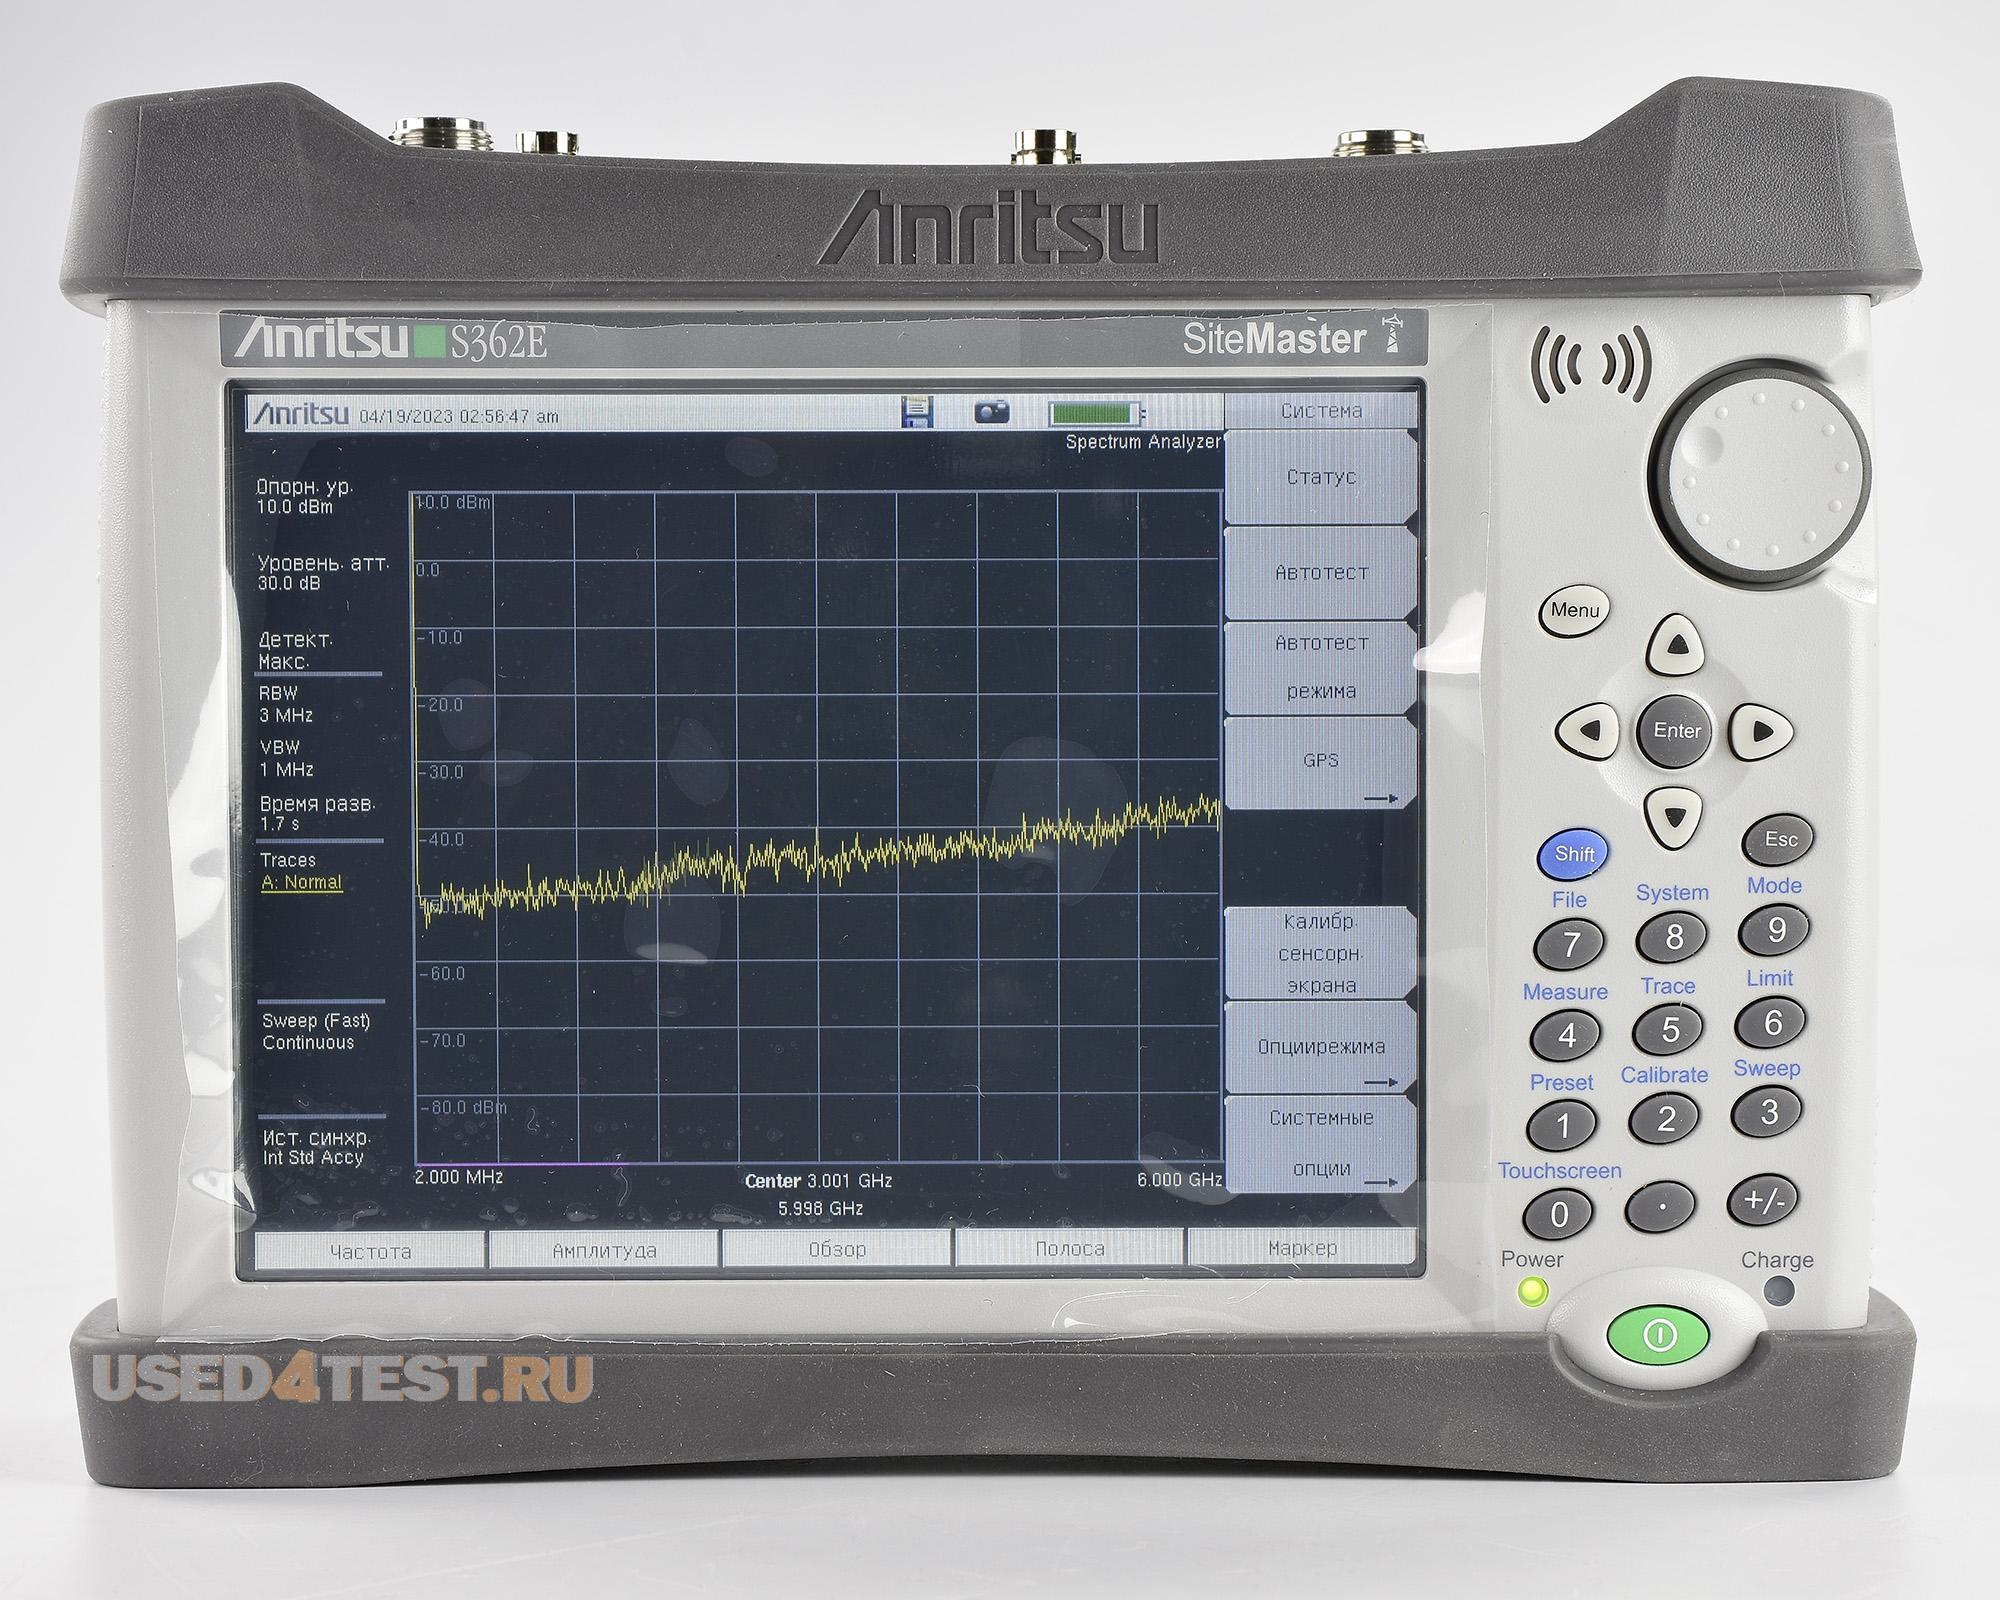 Анализатор АФУ Site Master, анализатор спектра
 Anritsu S362E
 Анализатор спектра: 9 кГц — 6 ГГц
 
Анализатор АФУ: 2 МГц — 6 ГГц
 
